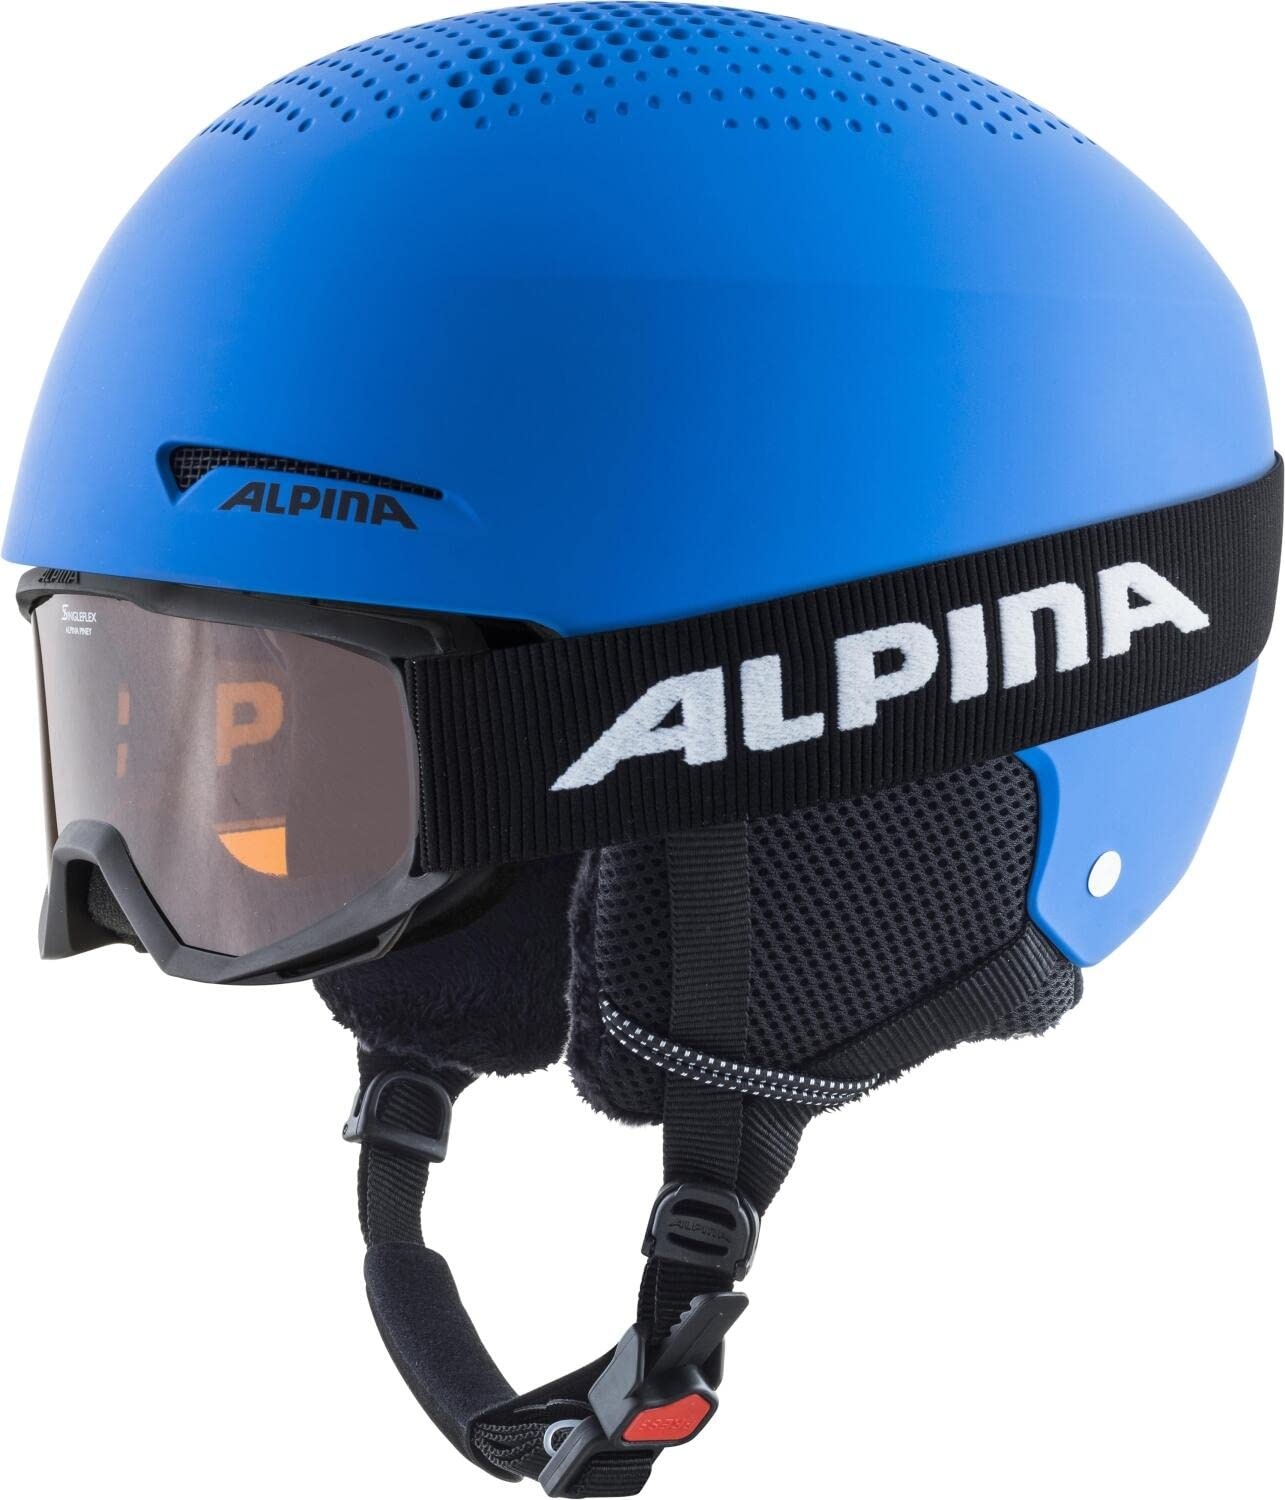 ALPINA ZUPO SET (+PINEY) - Hochwertiges, Sicheres & Robustes Set aus Skibrille & Skihelm Für Kinder, blue matt, 48-52 cm